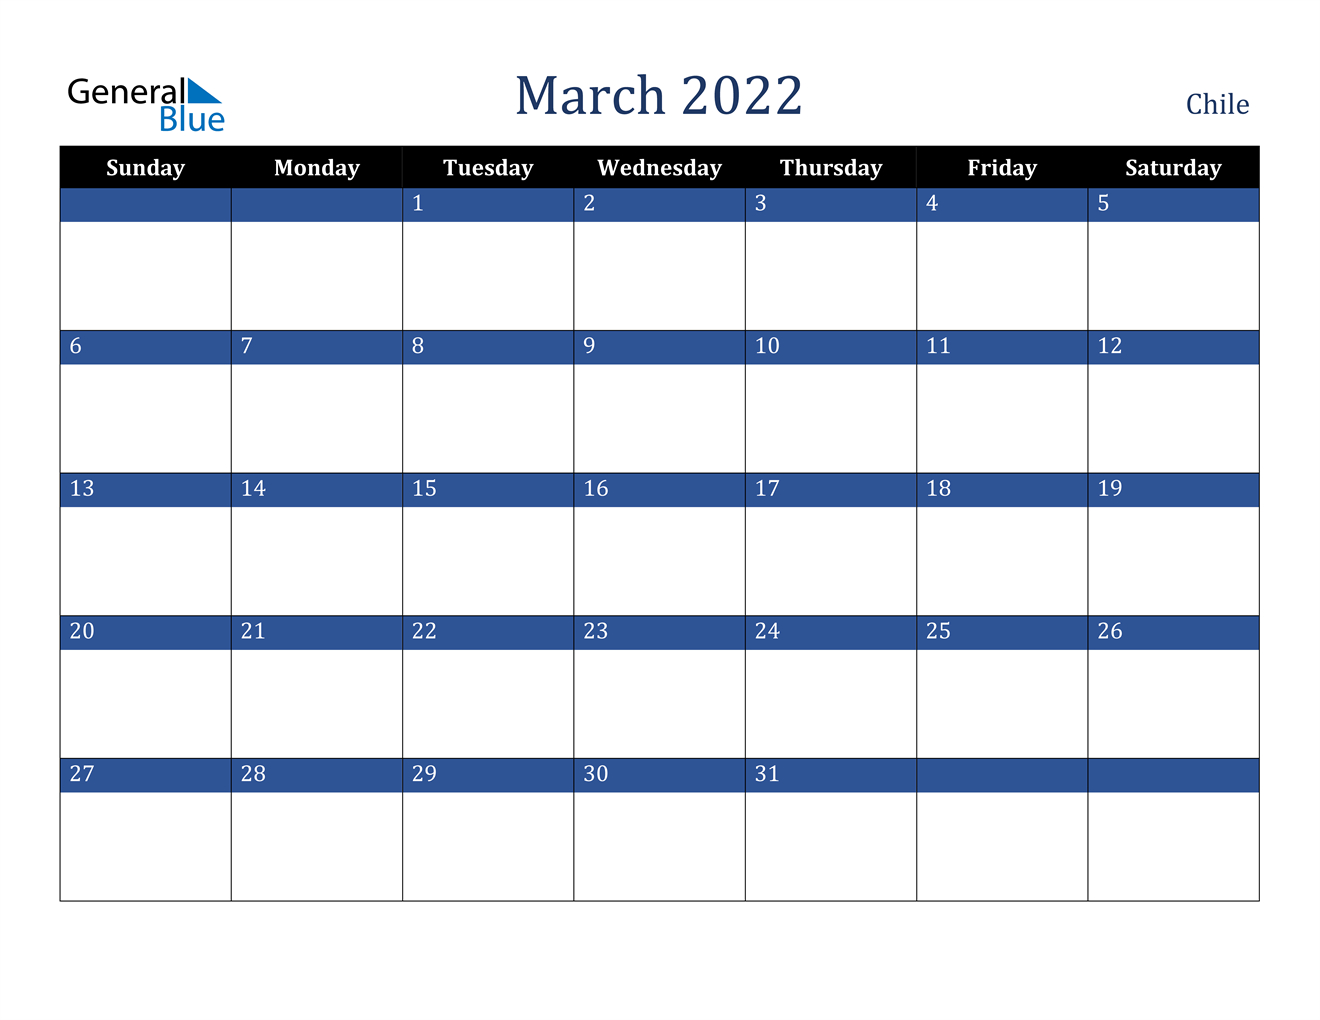 March 2022 Calendar - Chile